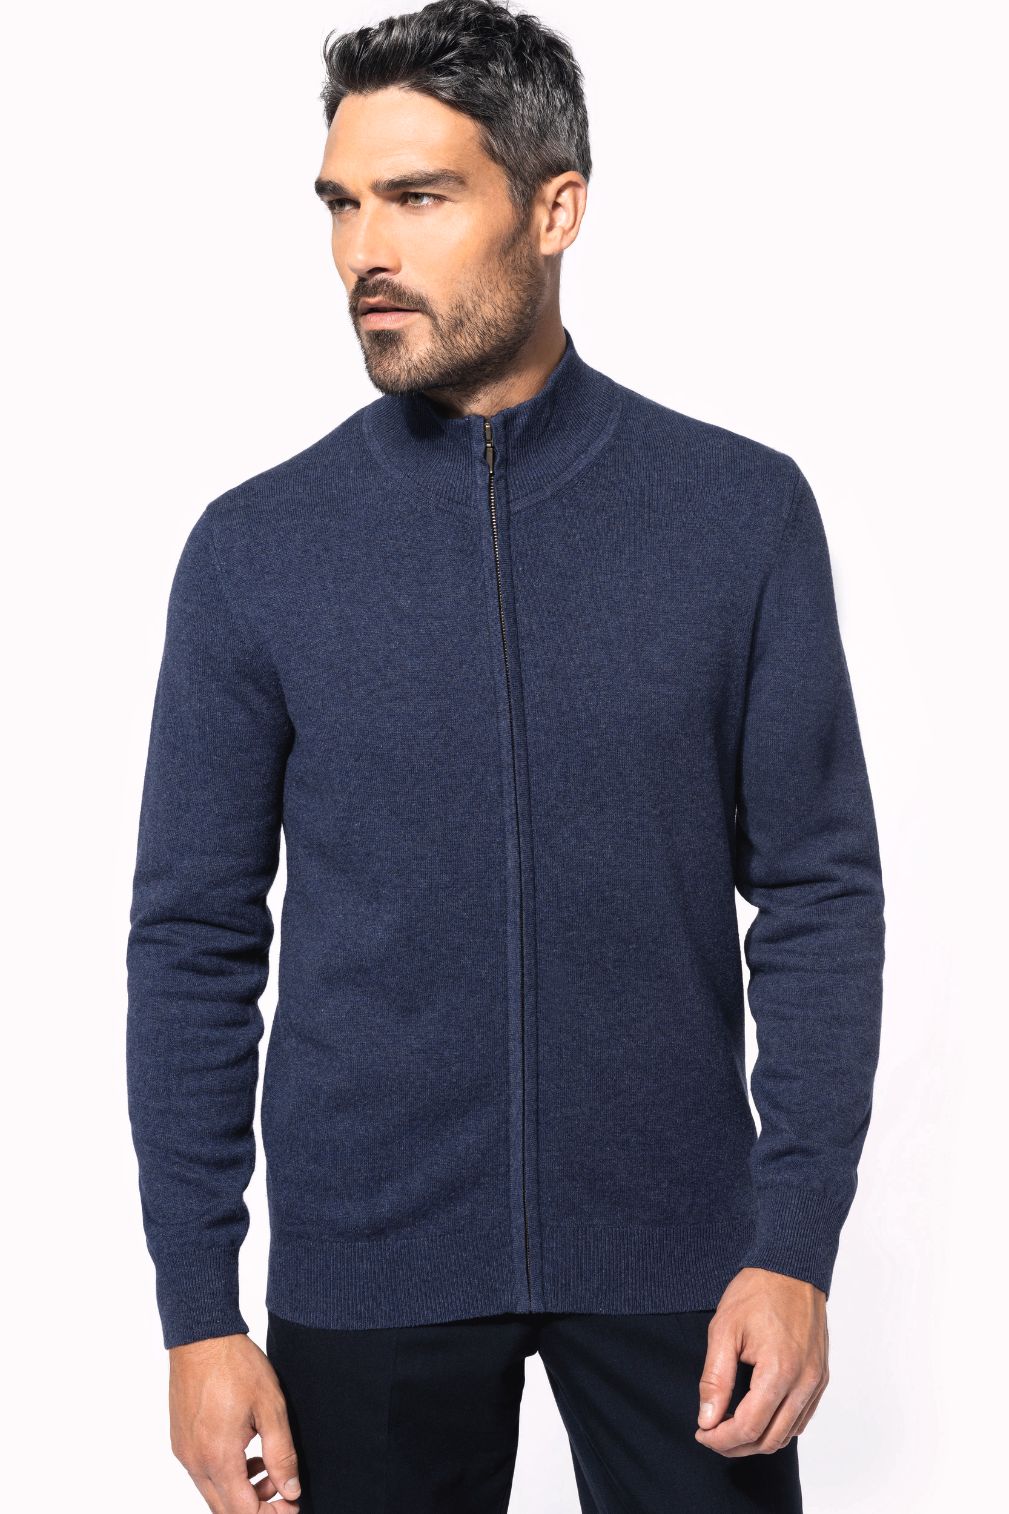 Pánský svetr na zip Premium cardigan - Výprodej - zvětšit obrázek